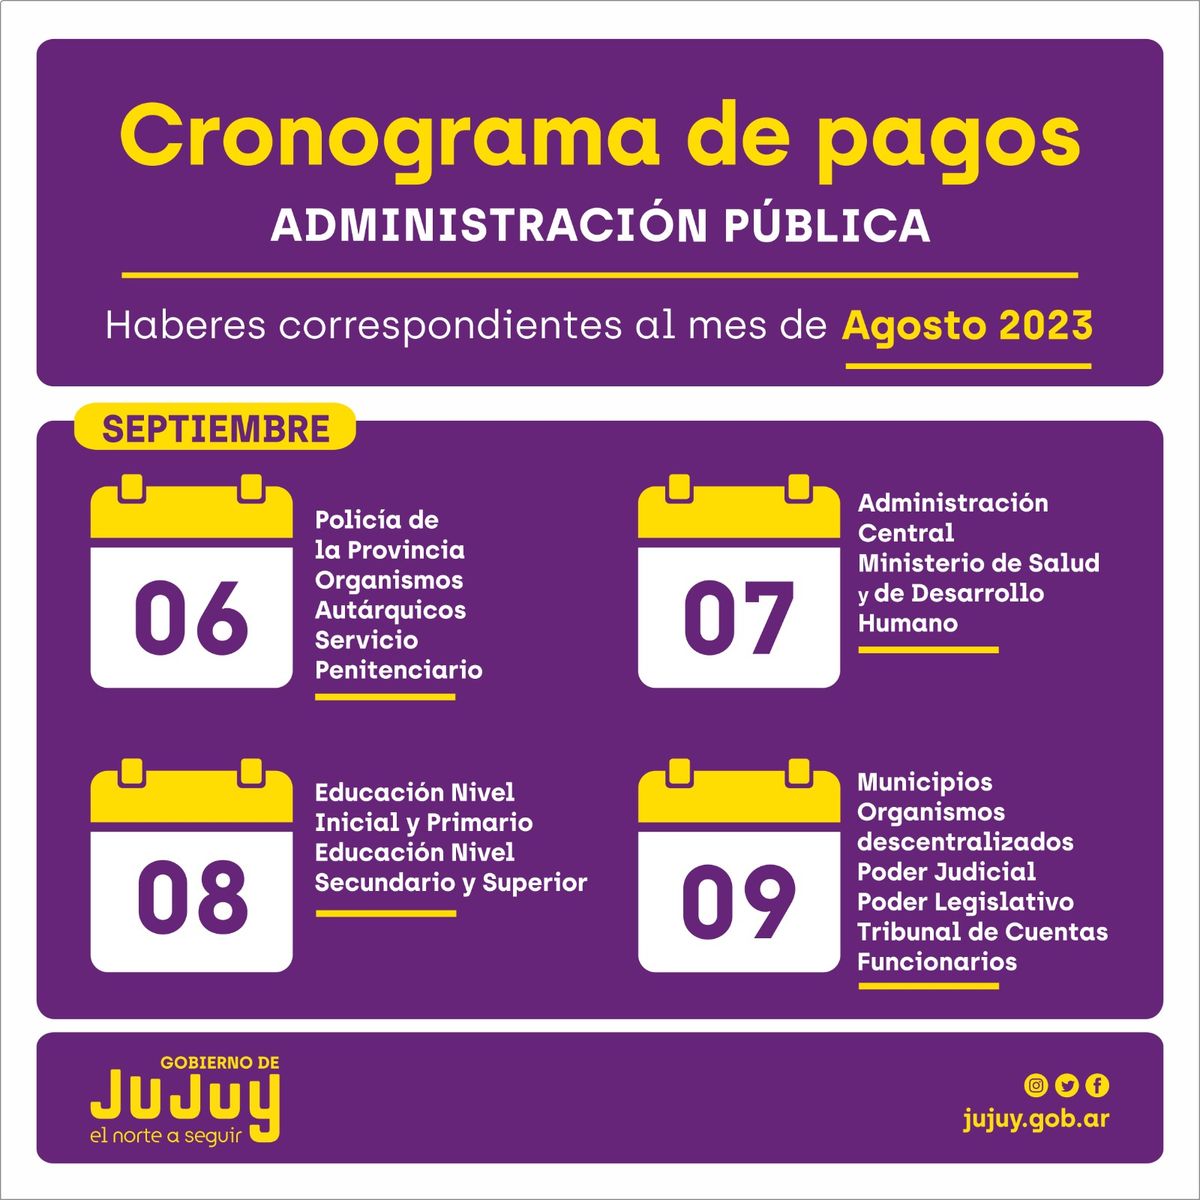 El miércoles 6 de septiembre inicia el cronograma de pagos para los agentes de las reparticiones públicas